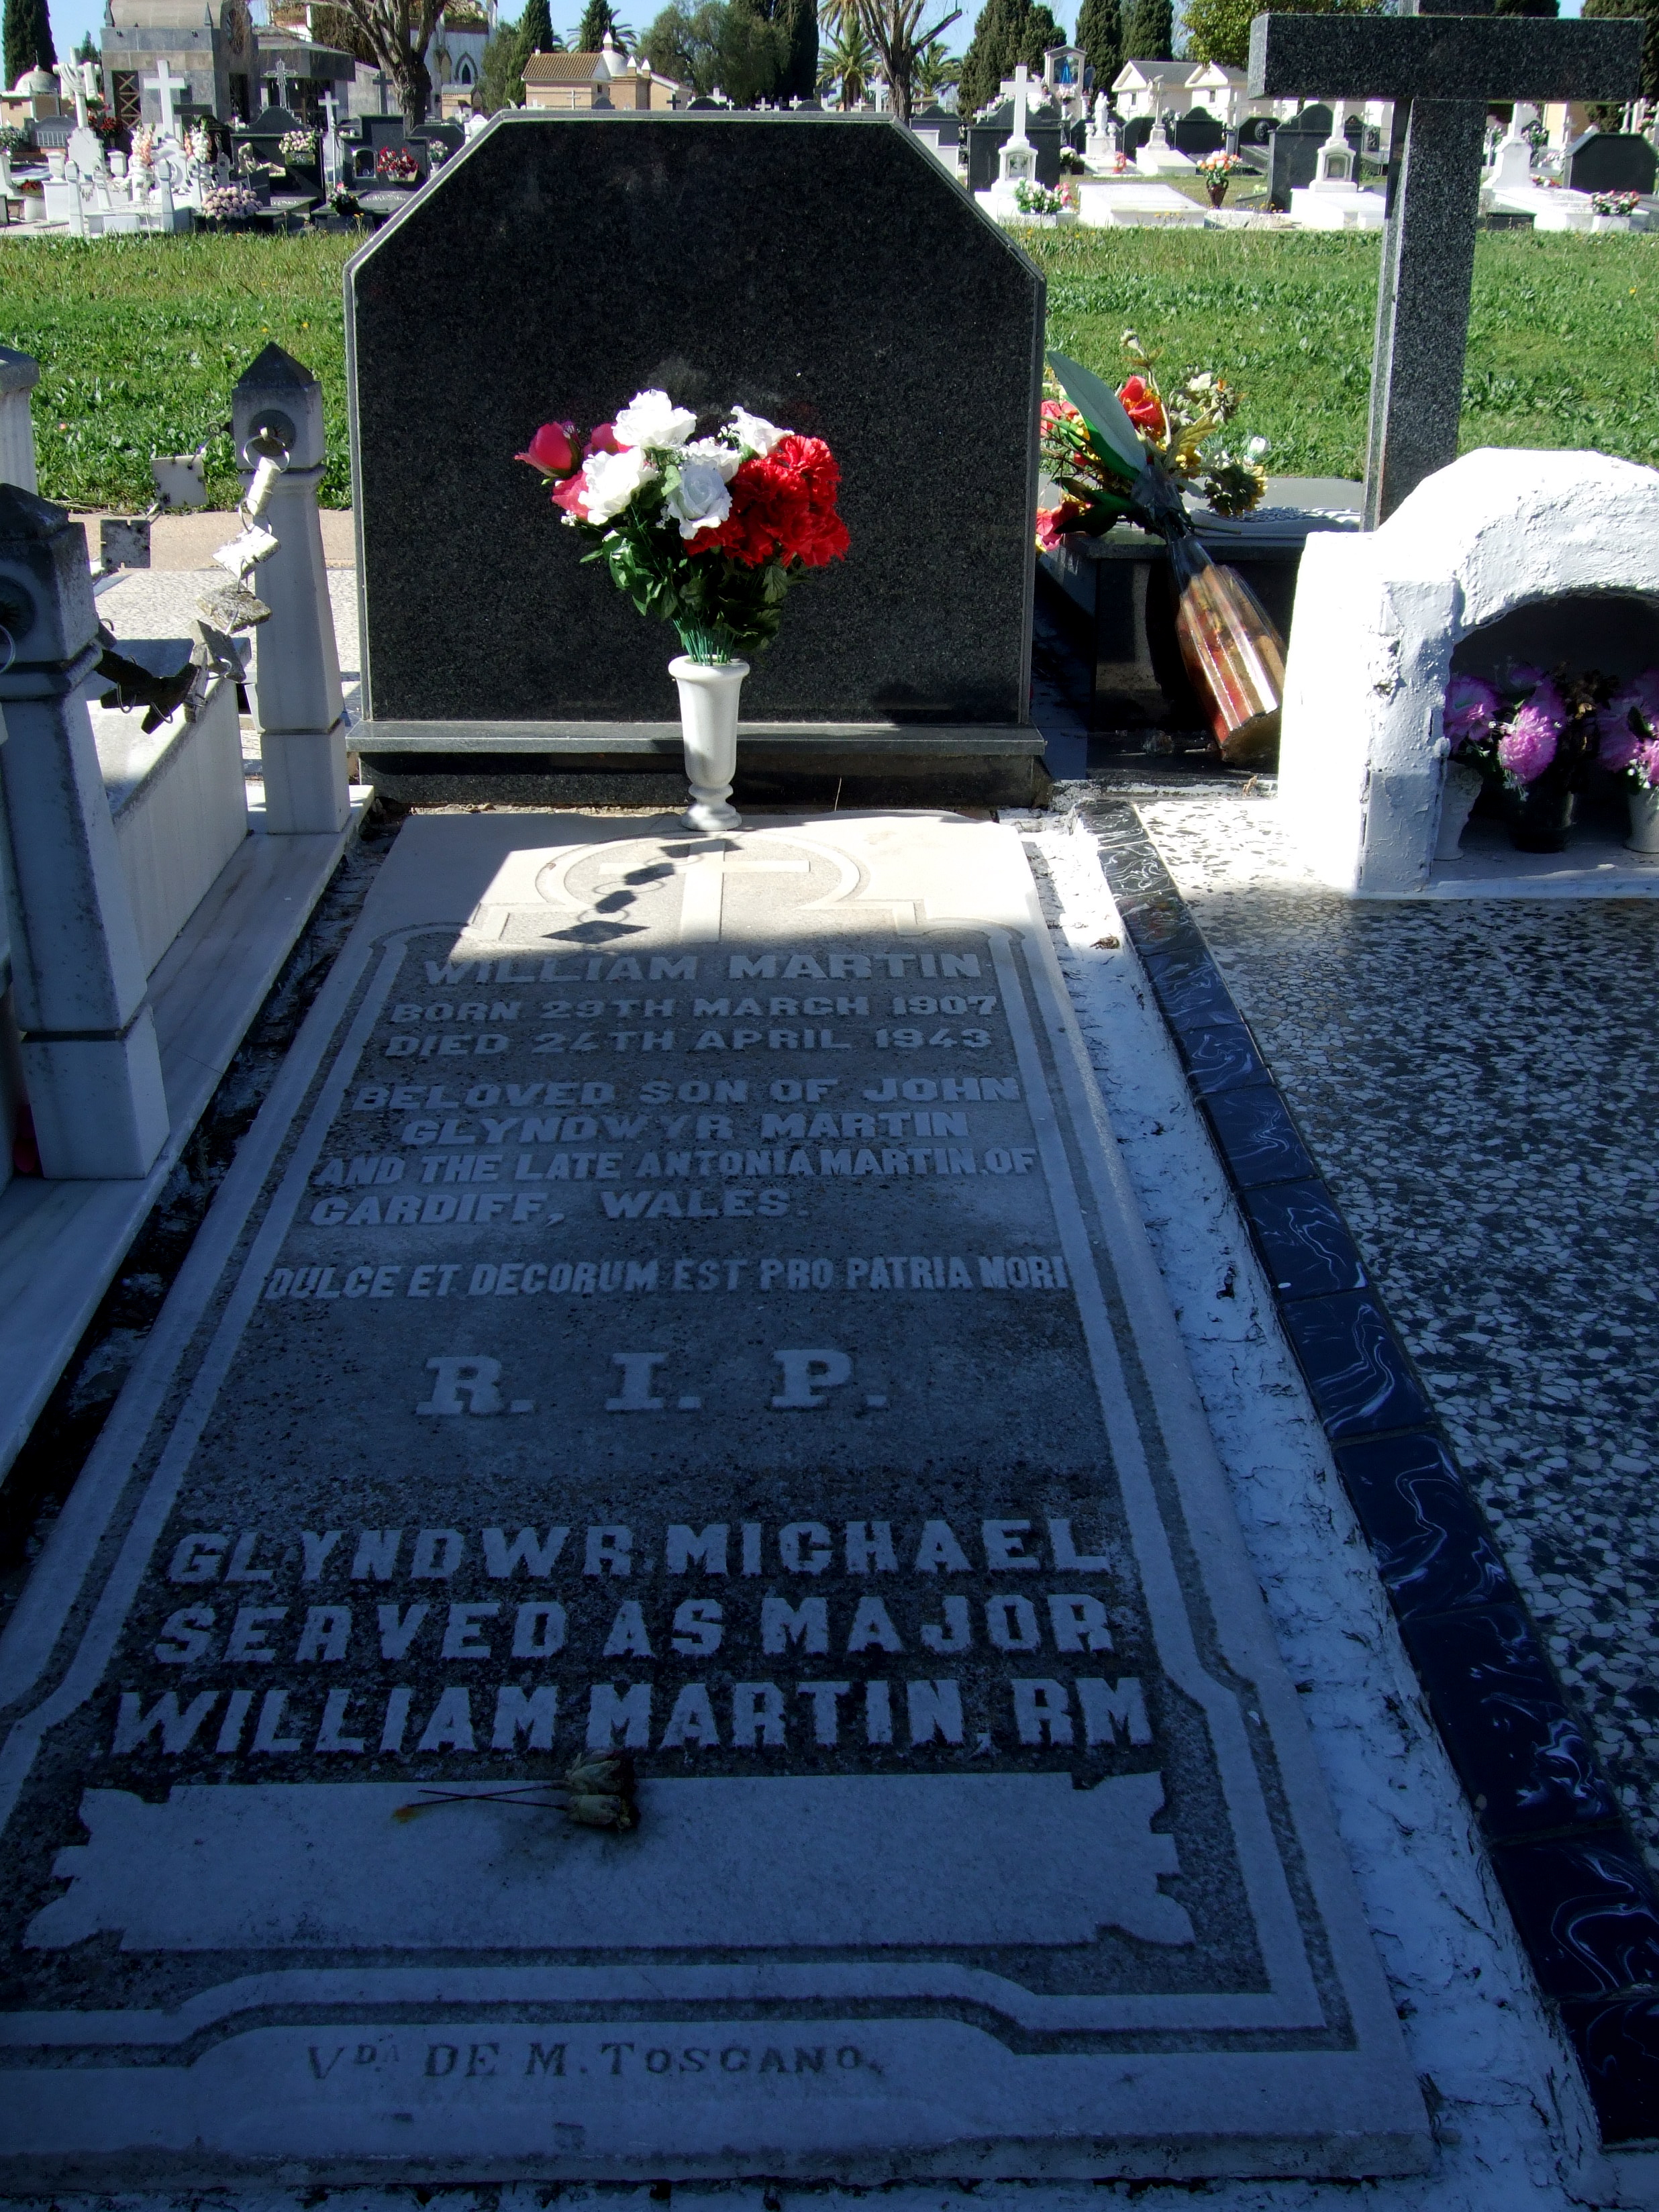 La tumba de William Martin en el cementerio de Huelva: siempre hay flores frescas